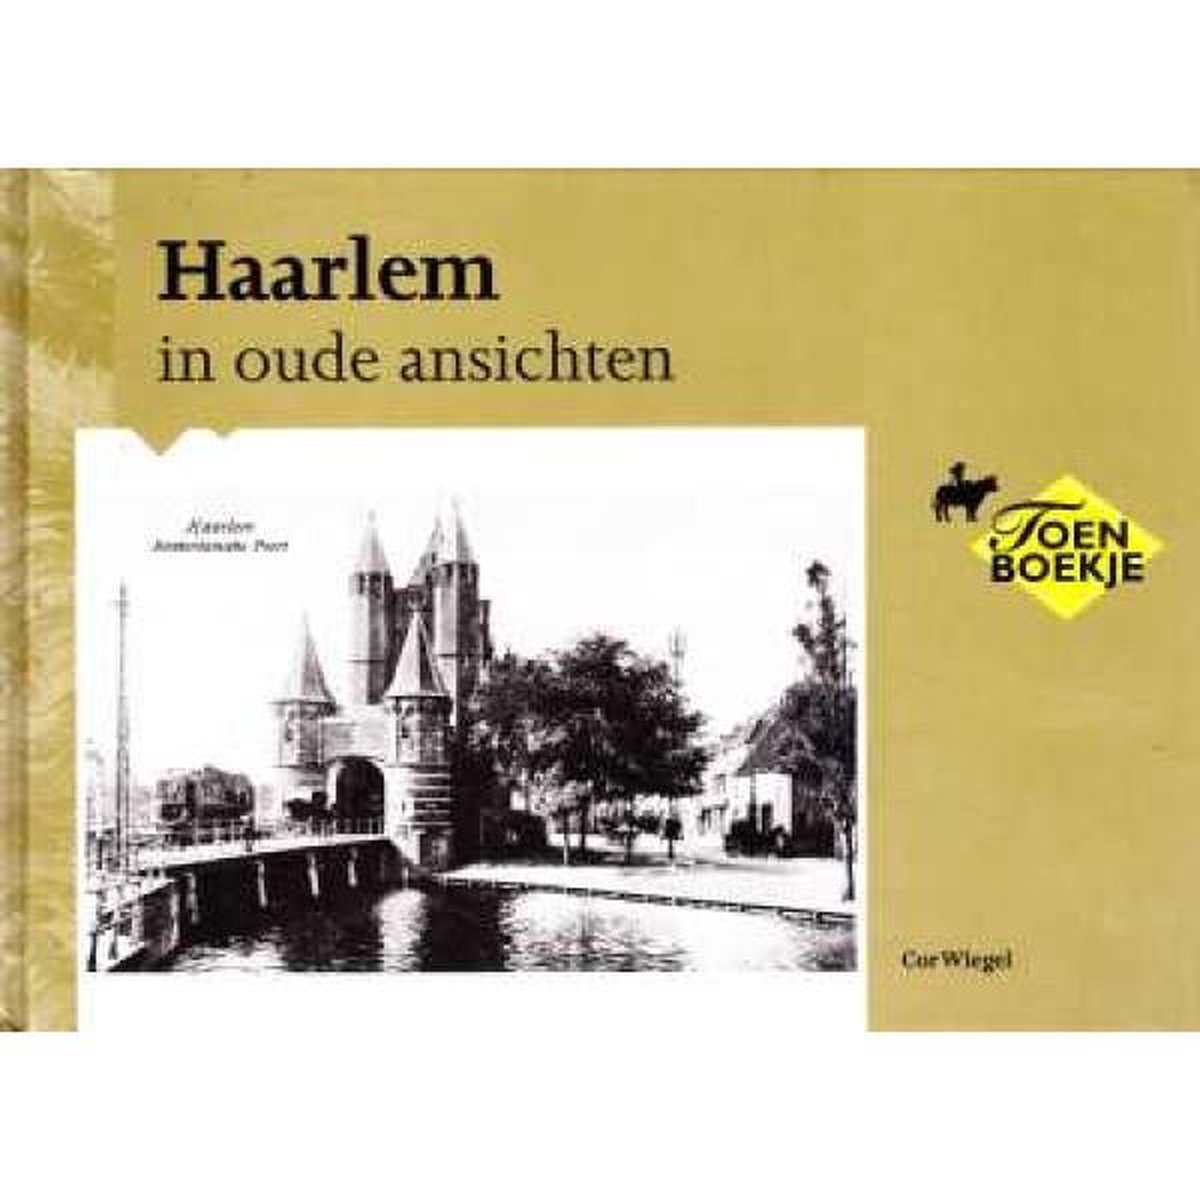 Haarlem in oude ansichten